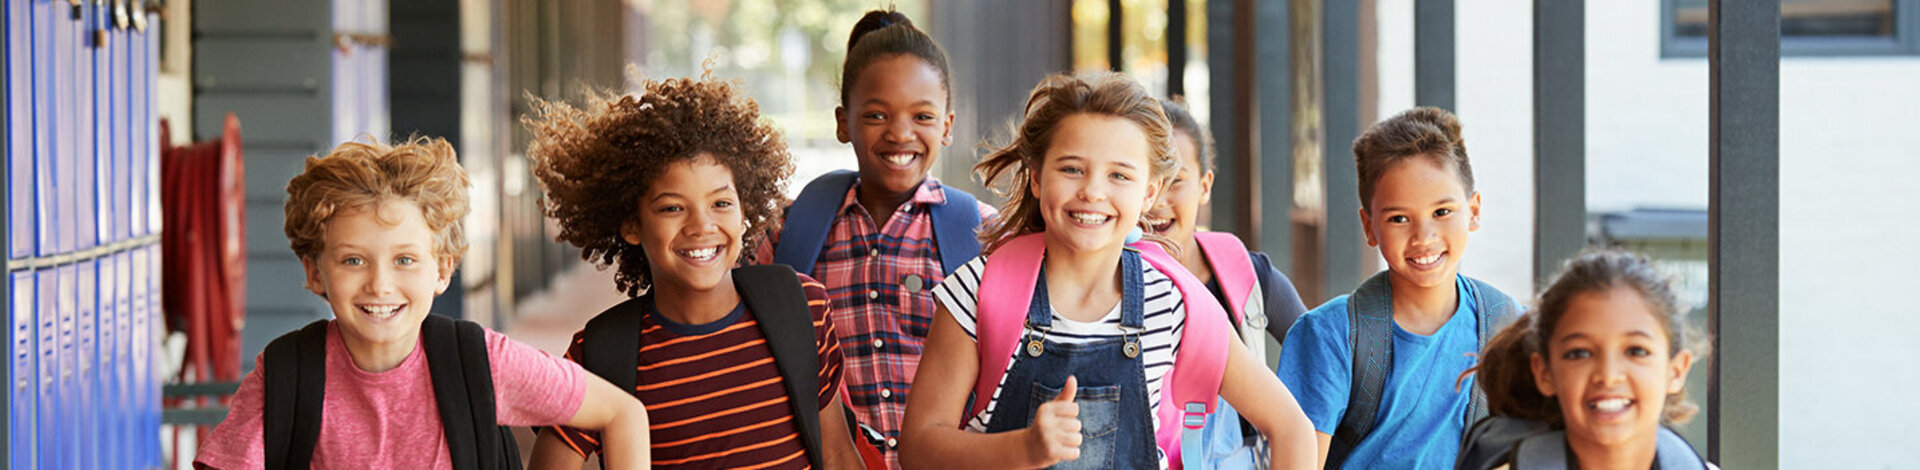 Sieben junge Schüler, vier Mädchen, drei Jungs- mit unterschiedlichen Hautfarben, bunt gekleidet, rennen strahlend mit ihren Schulrucksäcken durch eine Schule.